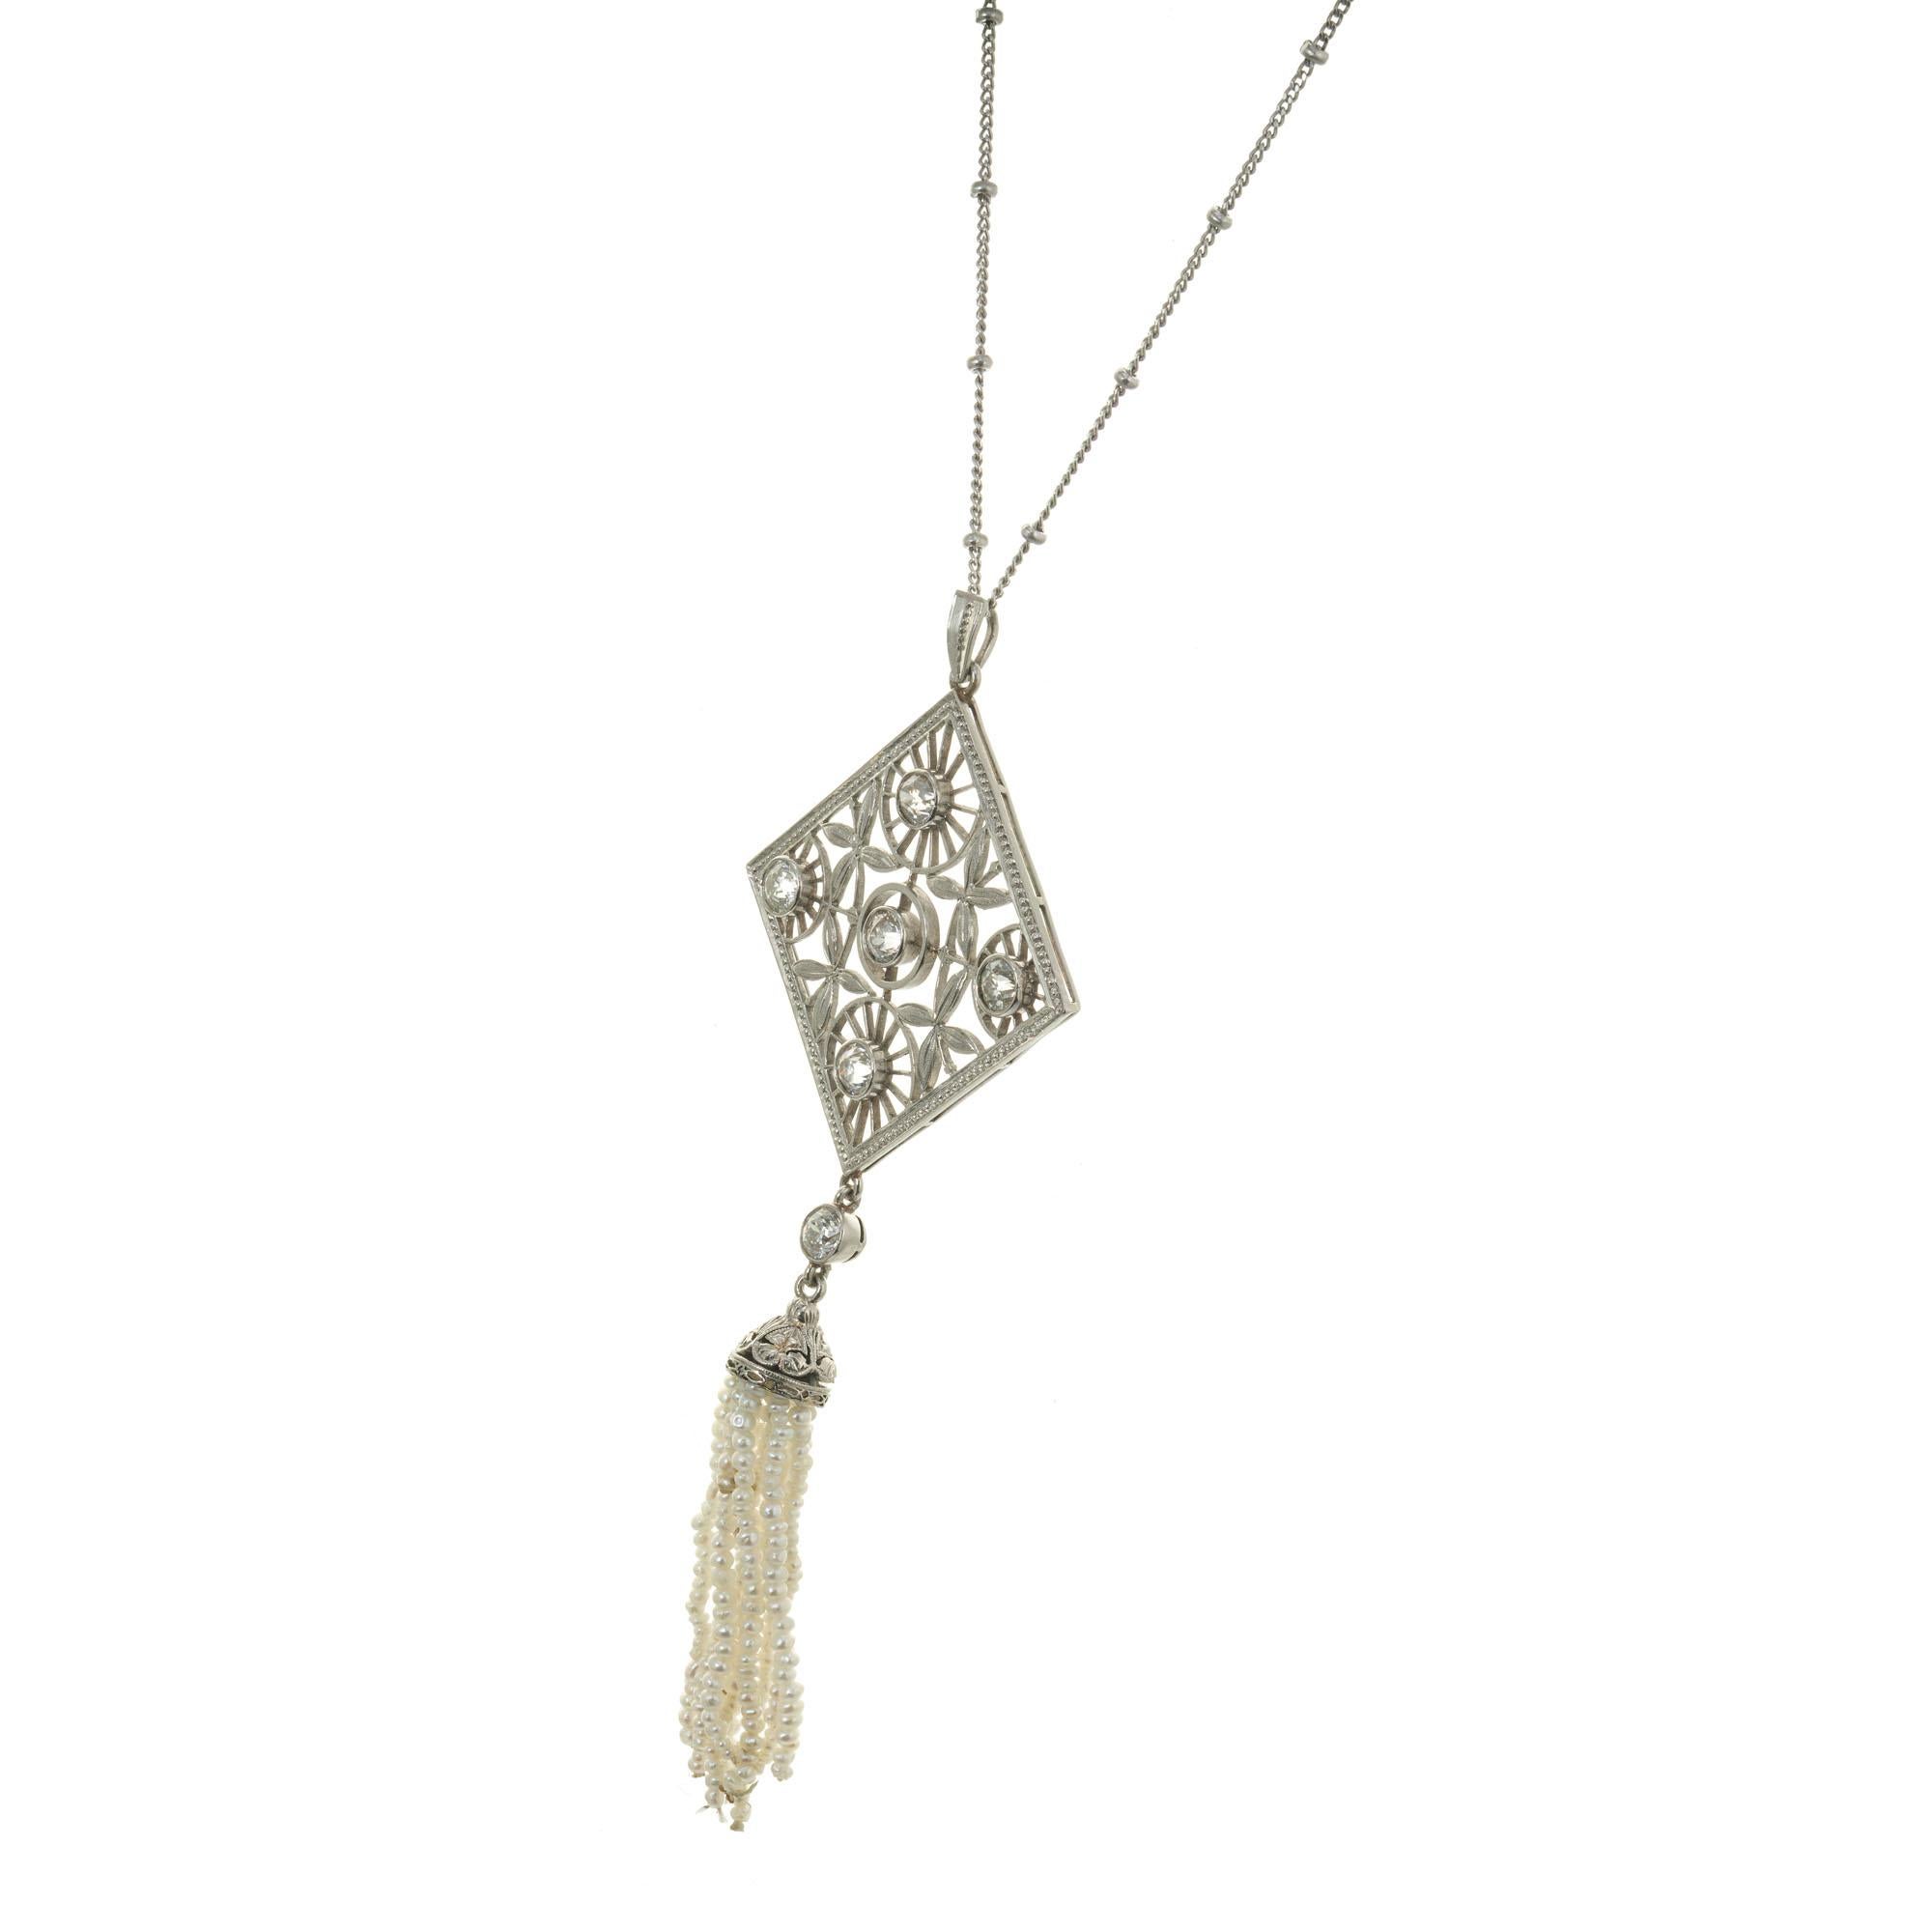 Handgefertigte Diamant- und Perlenanhänger-Halskette aus der Jahrhundertwende 1900. Durchbrochenes Oberteil mit Wagenrad und durchbrochenem Blumendesign, akzentuiert mit 6 Diamanten im alten europäischen Schliff und einer mehrsträngigen Quaste aus